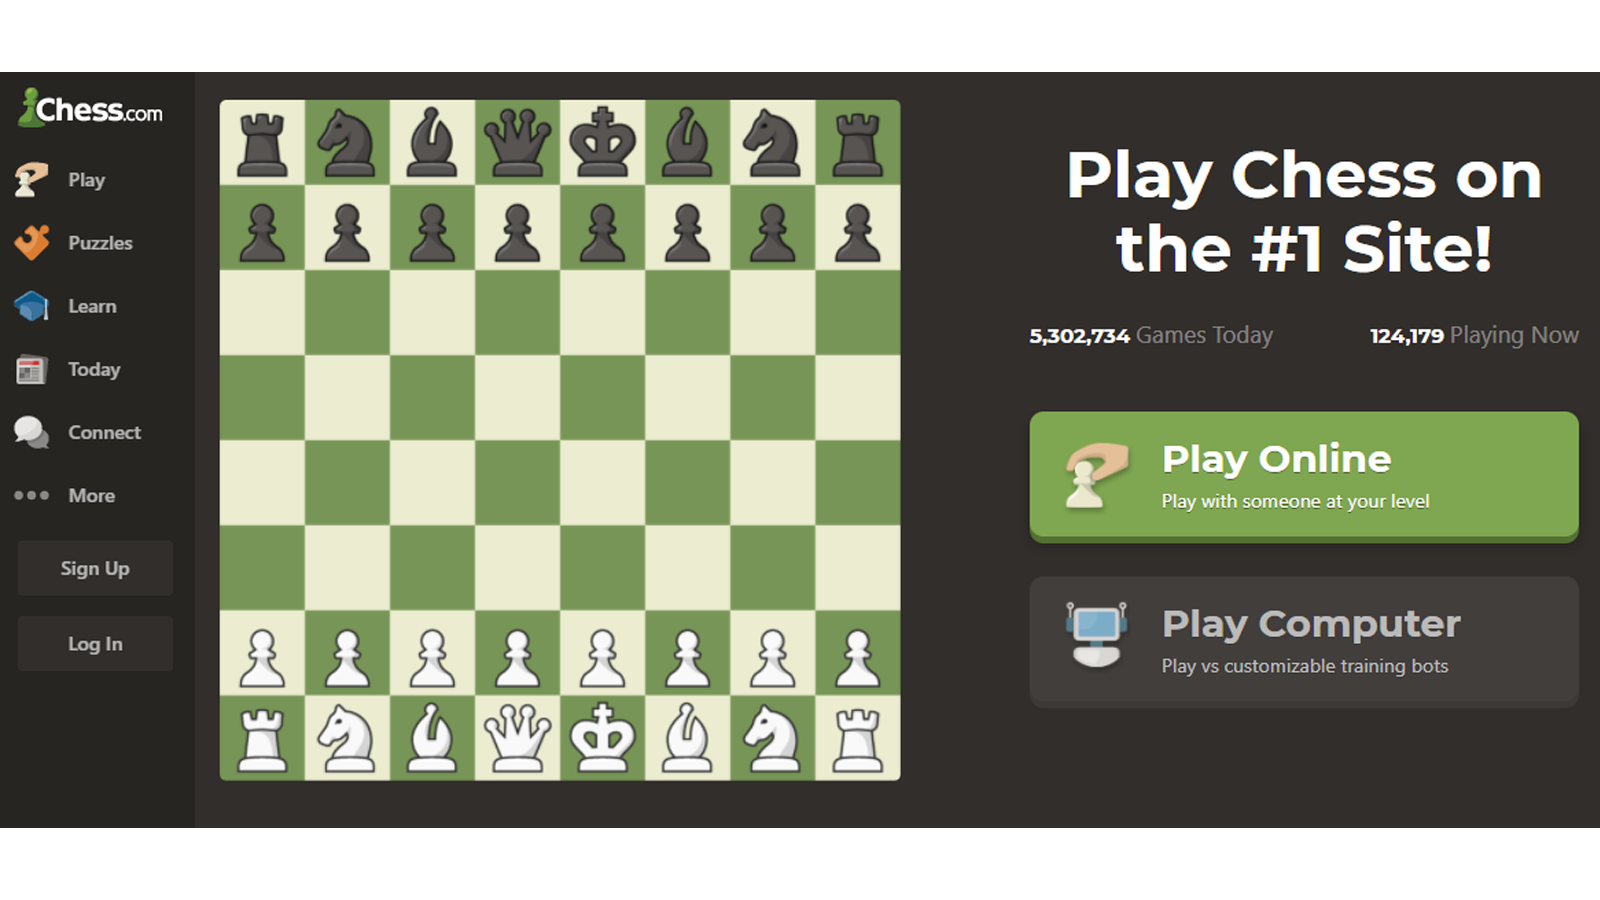 oyunu oynama veya kayıt olma seçenekleriyle chess.com ana sayfası